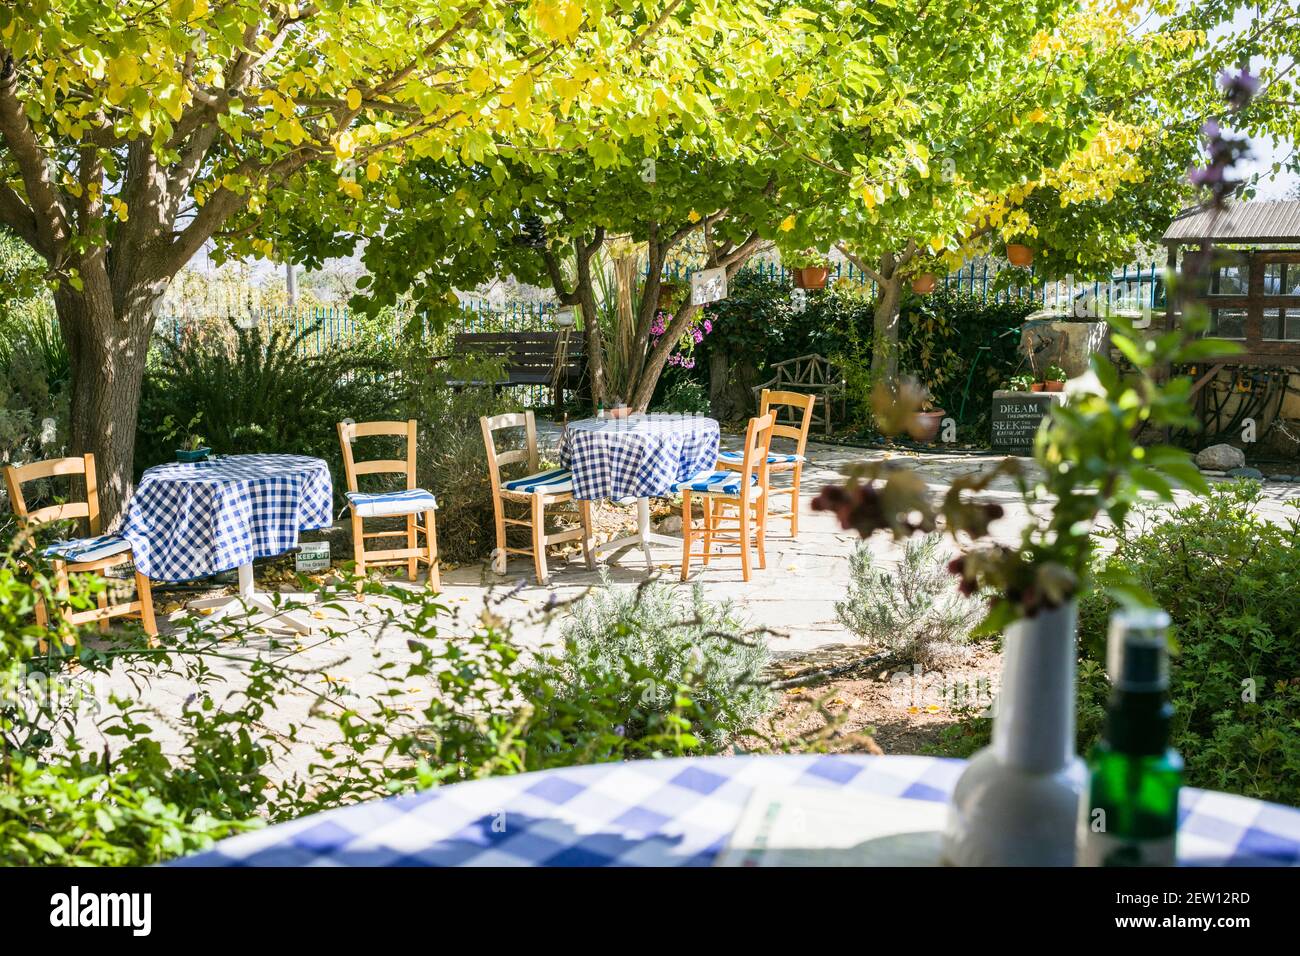 Mediterranes Café an einem warmen sonnigen Tag. Tische mit blau-weiß karierten Tischdecken. Gartenbepflanzung mit Zitrusbäumen. Stockfoto